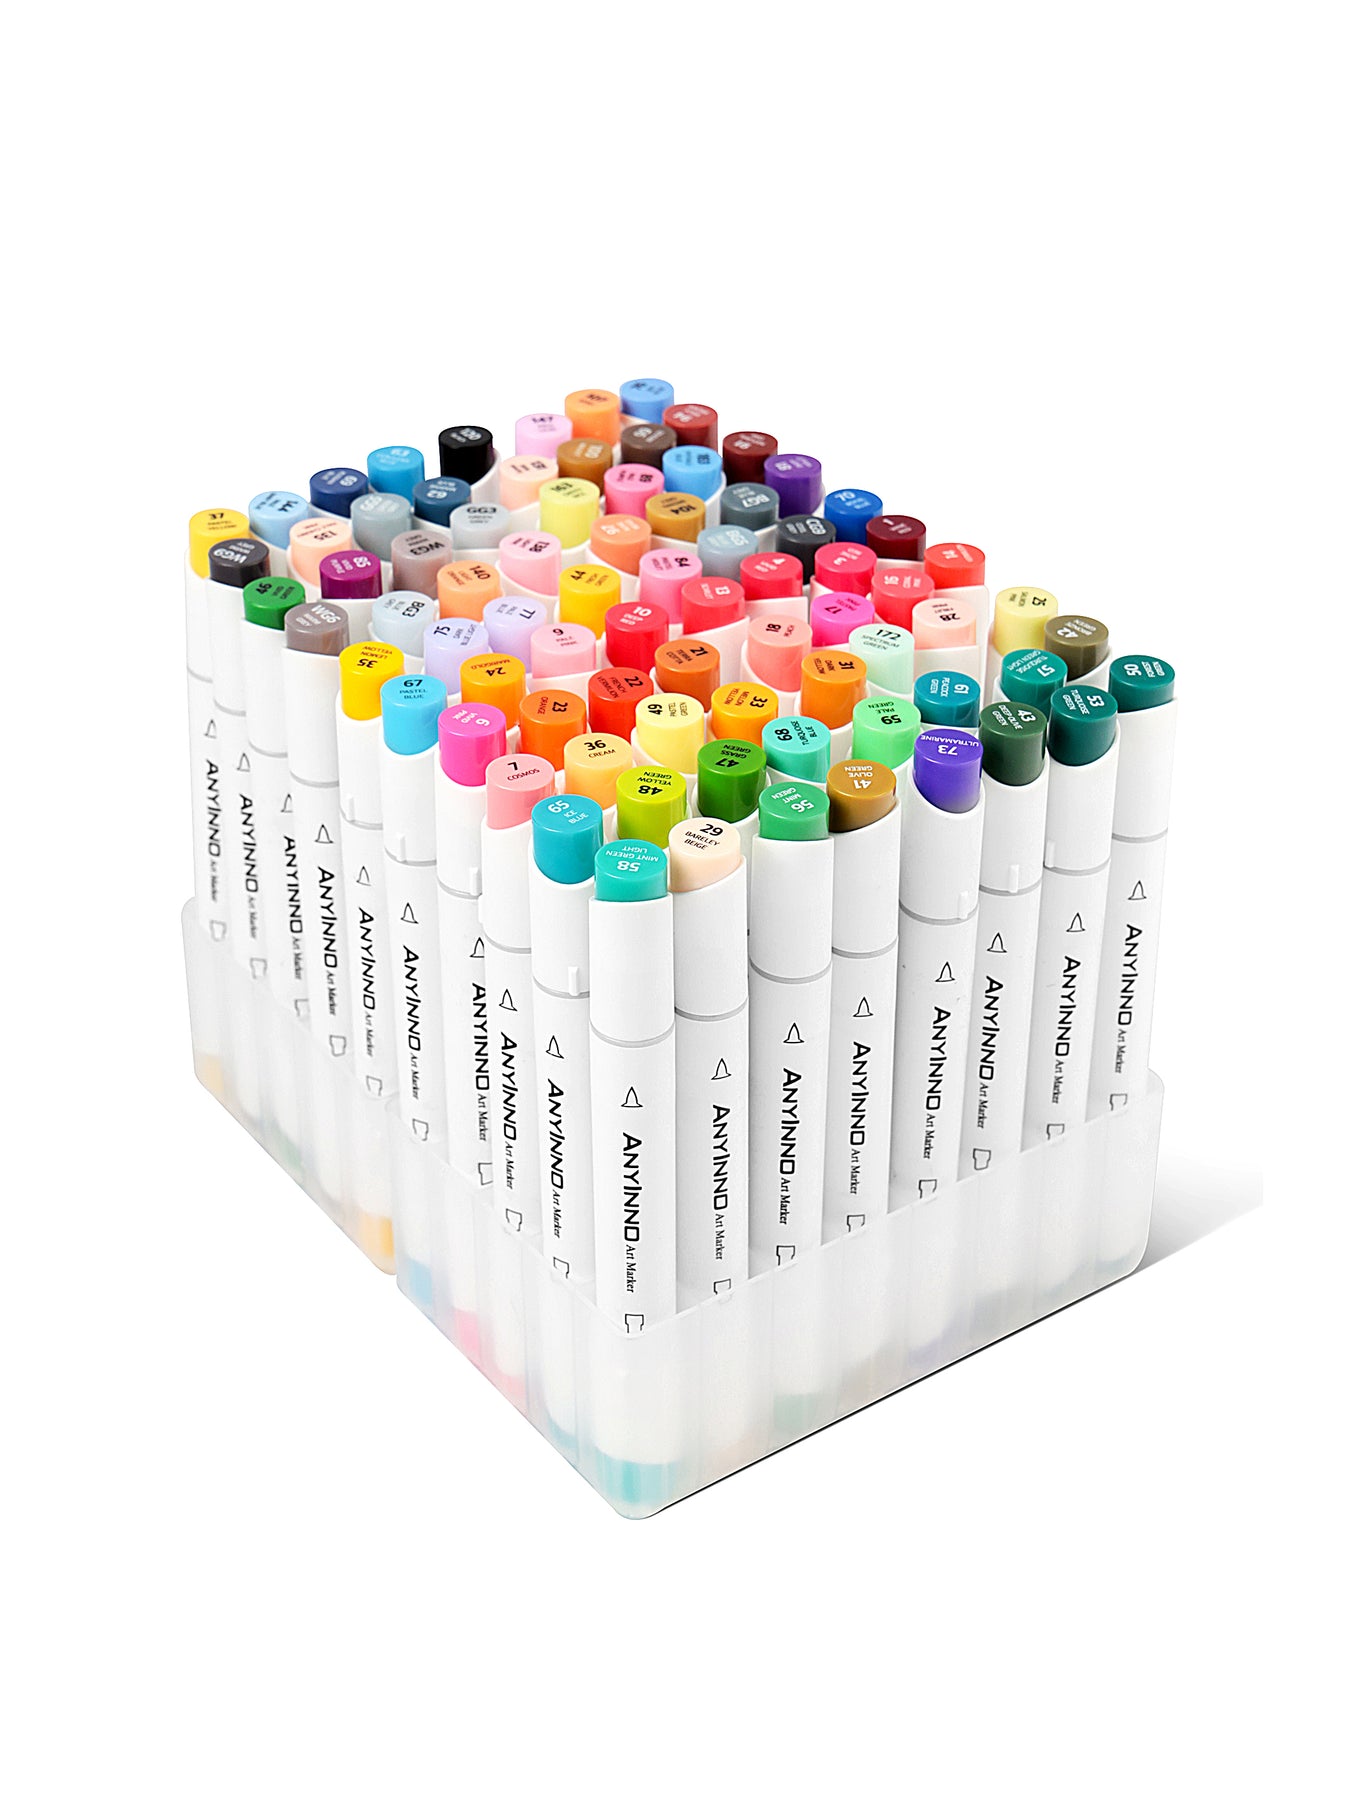 ANYINNO 36 Colors Dual Tip Brush Pens, Watercolor Marker